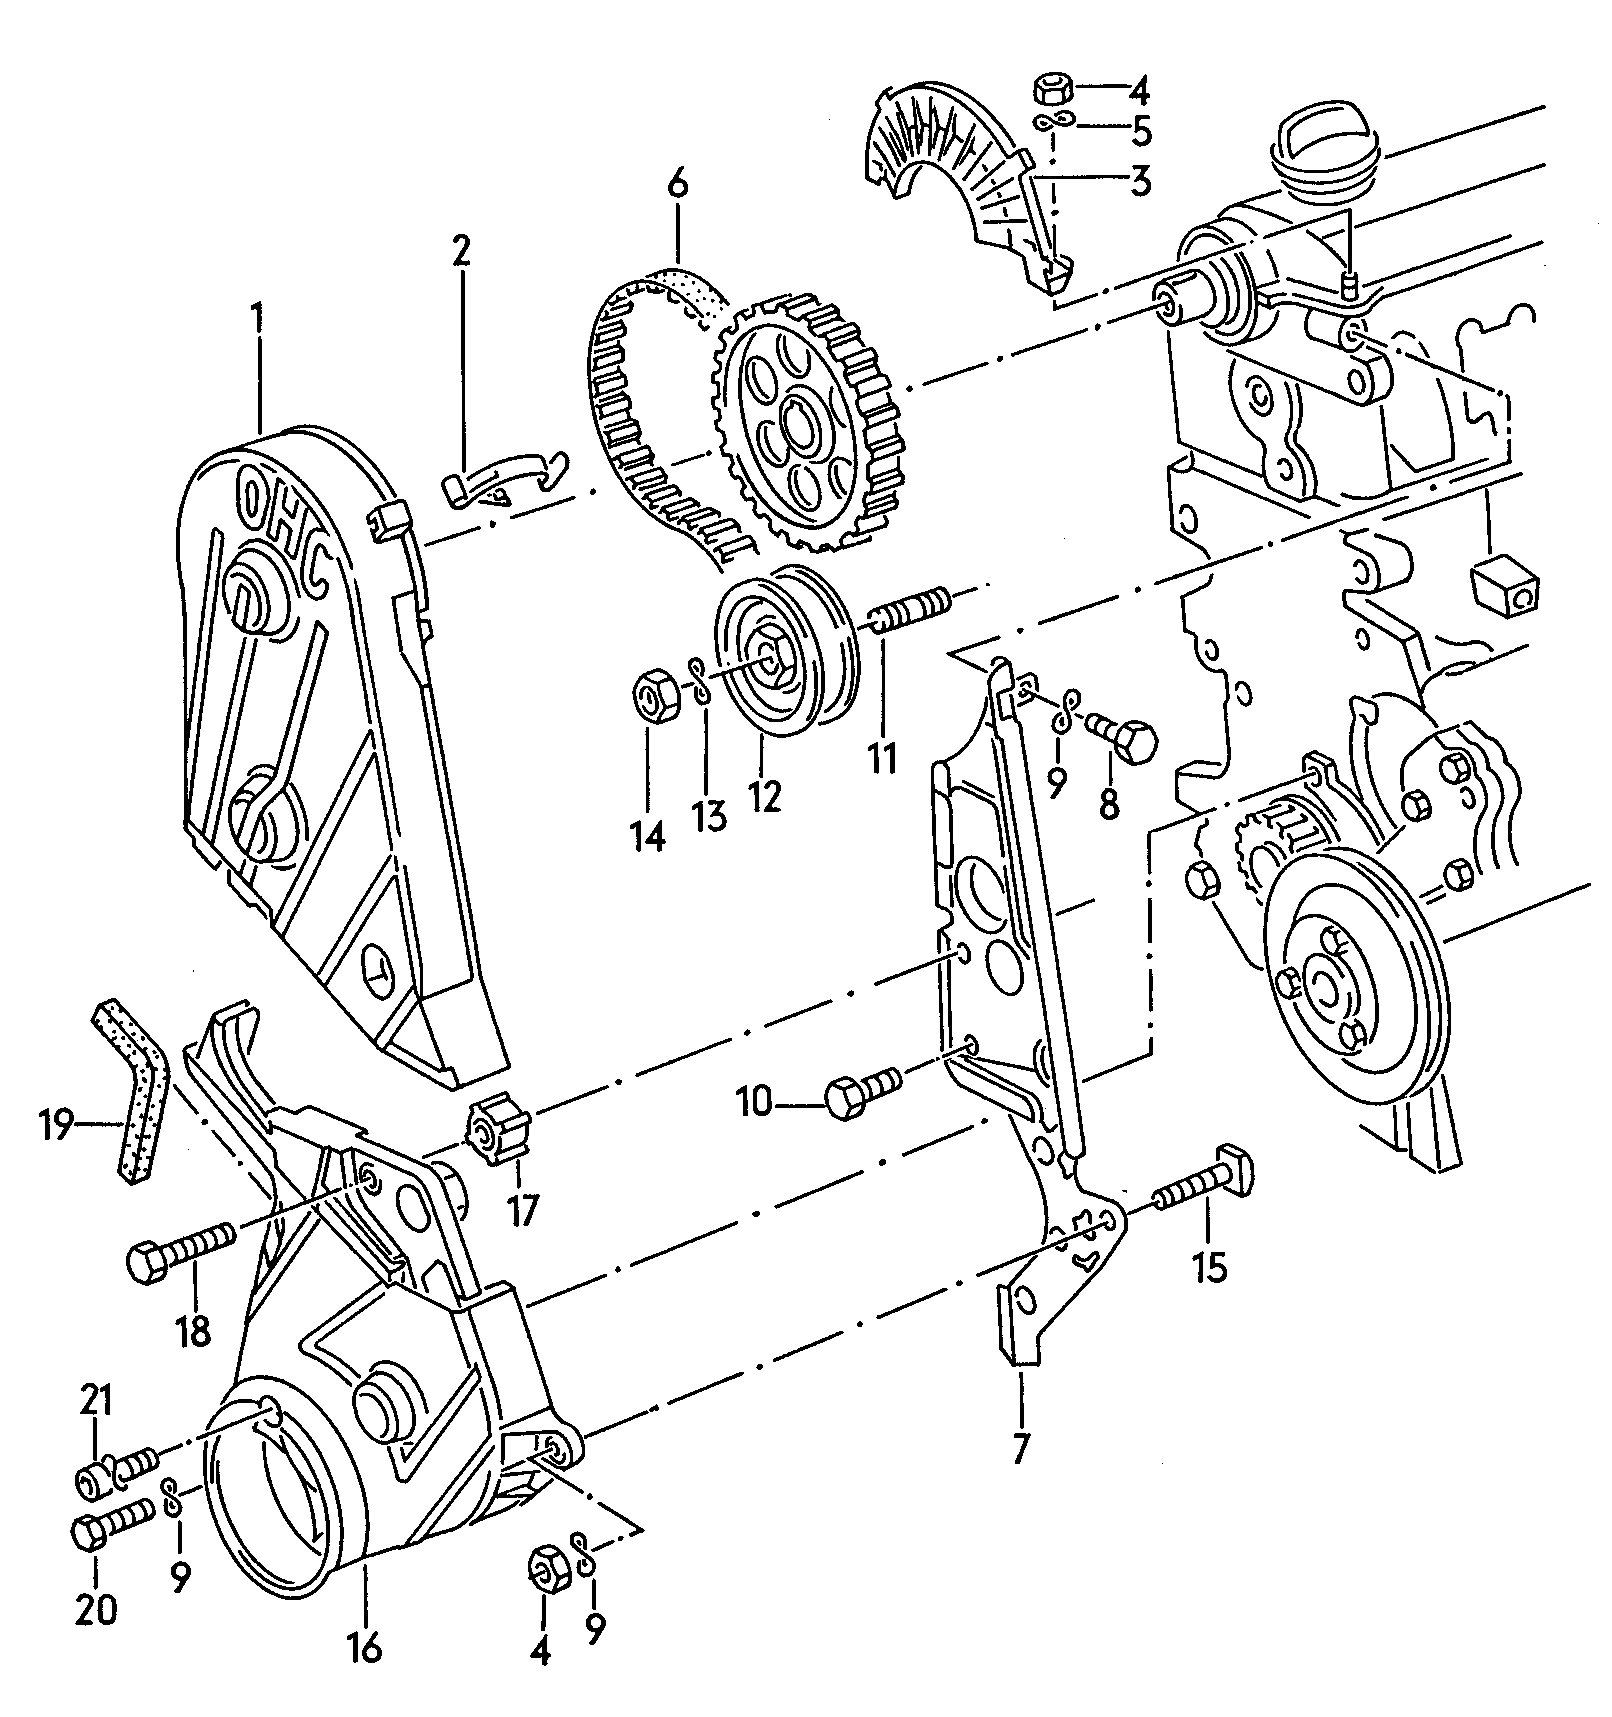 Triger kayışıTriger kayışı koruyucu 1,8Ltr. - Audi 100/Avant - a100